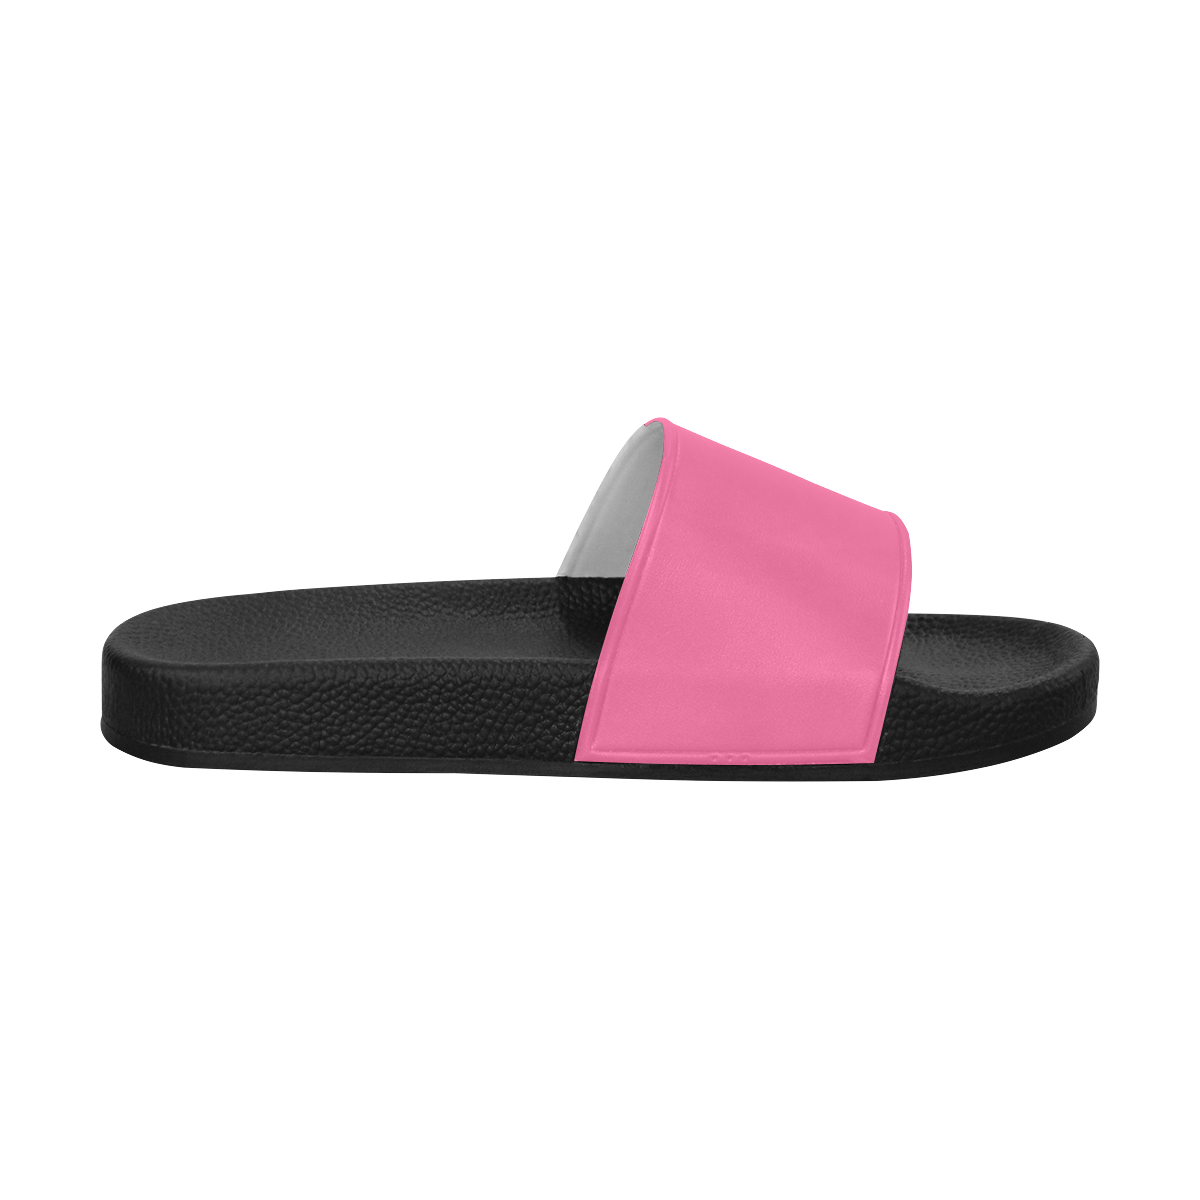 color French pink Men's Slide Sandals (Model 057)